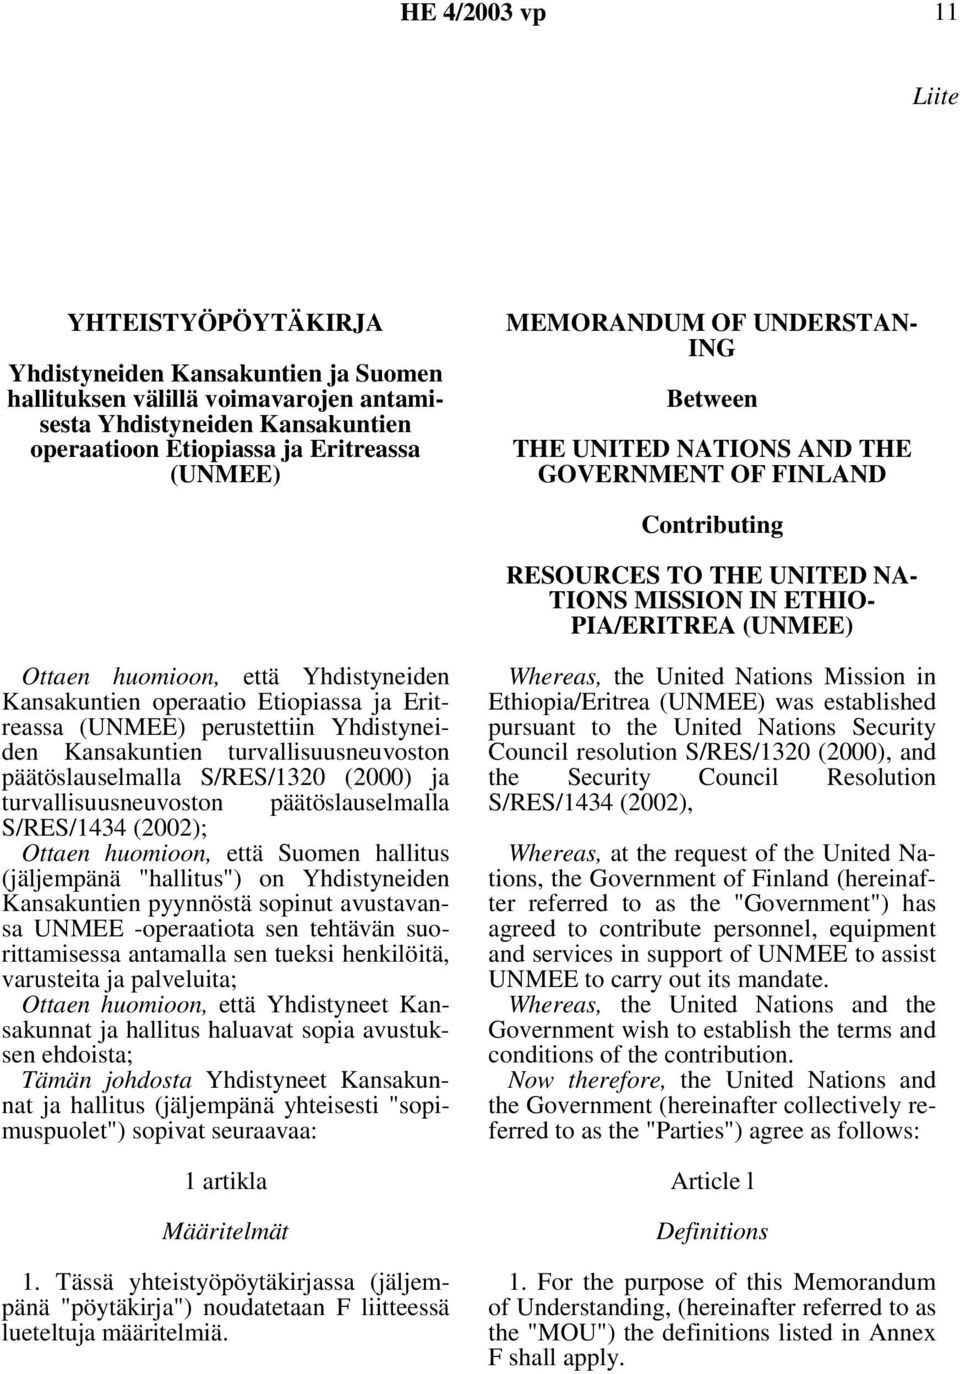 Yhdistyneiden Kansakuntien operaatio Etiopiassa ja Eritreassa (UNMEE) perustettiin Yhdistyneiden Kansakuntien turvallisuusneuvoston päätöslauselmalla S/RES/1320 (2000) ja turvallisuusneuvoston